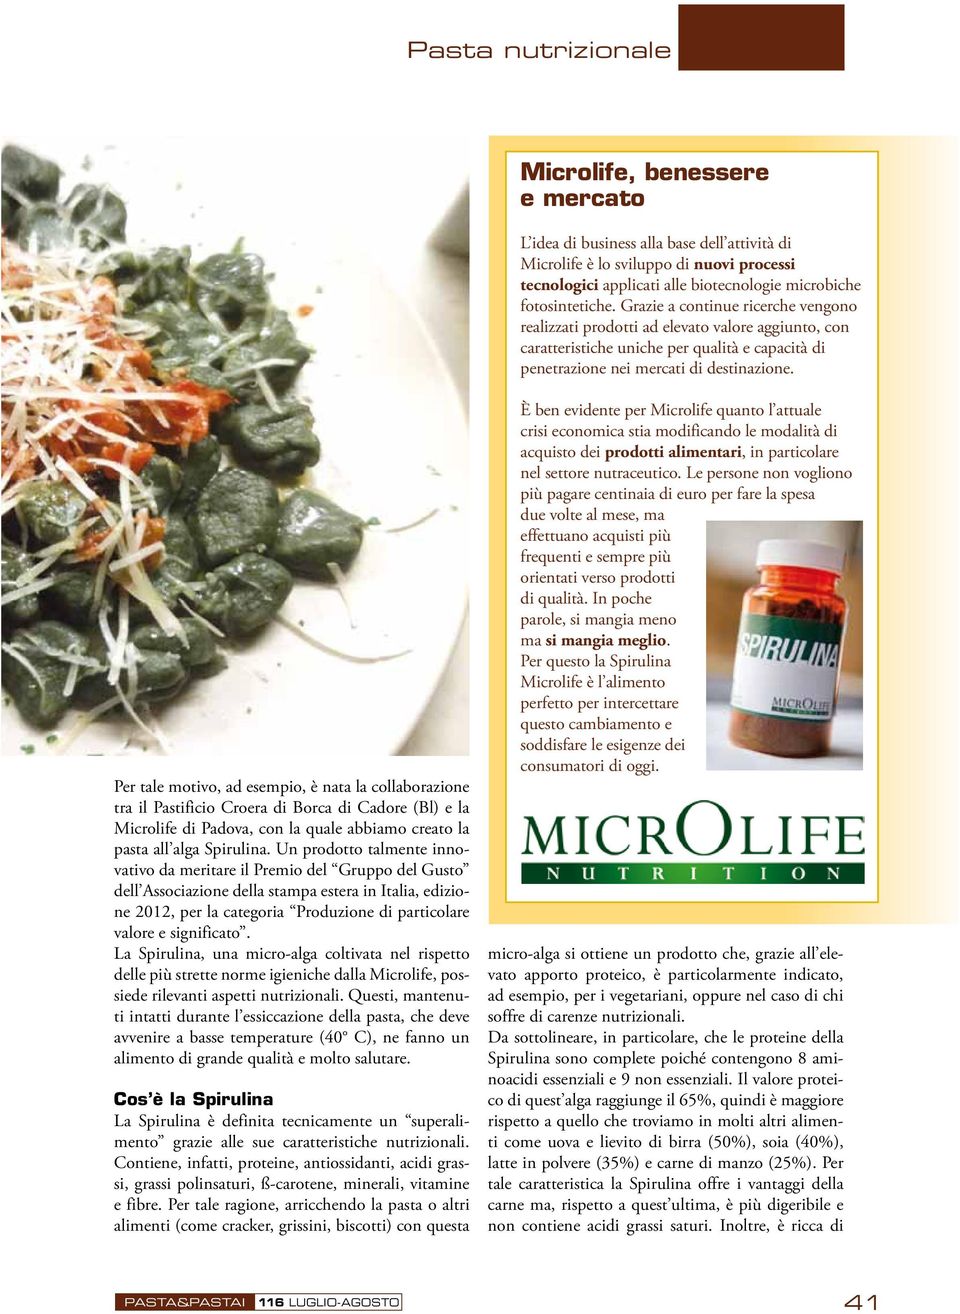 Per tale motivo, ad esempio, è nata la collaborazione tra il Pastificio Croera di Borca di Cadore (Bl) e la Microlife di Padova, con la quale abbiamo creato la pasta all alga Spirulina.